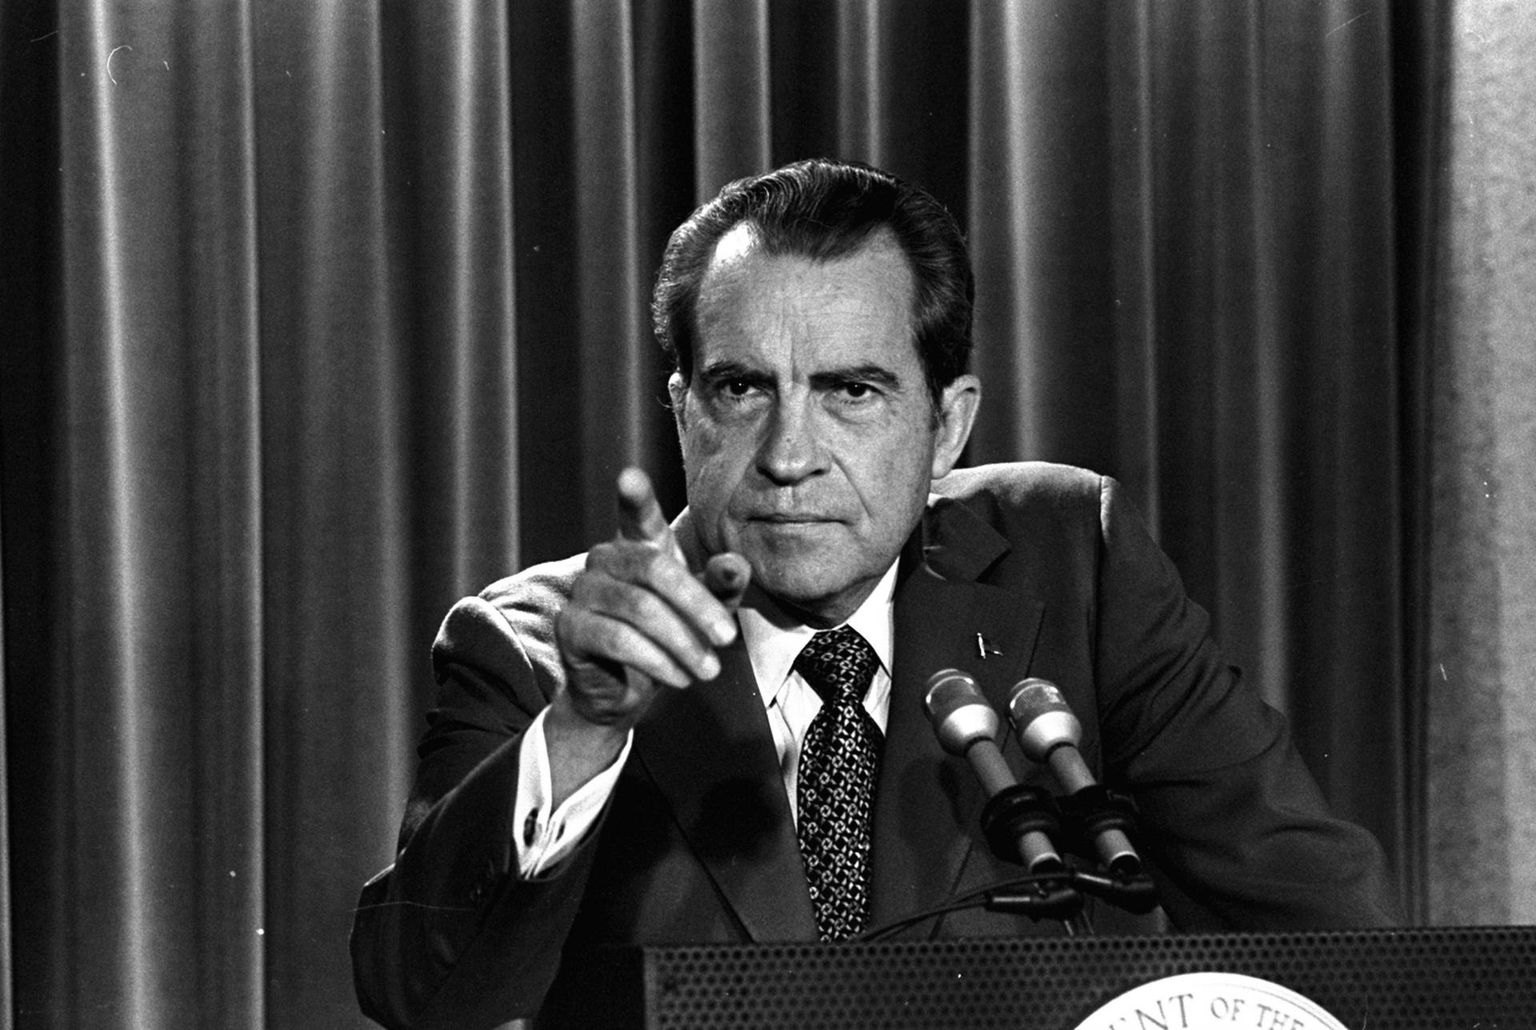 Ameerika Ühendriikide president Richard Nixon nimetas 14. juuli 1969 eripöördumises uimastite kuritarvitamist tõsiseks riiklikuks ohuks. Uimastitega seotud alaealiste vahistamise ja tänavakuritegevuse hüppelise kasvu tõttu 1960. aastate algusest saati nõudis ta uimastivastase poliitika rakendamist nii föderaal- kui ka osariigitasandil.